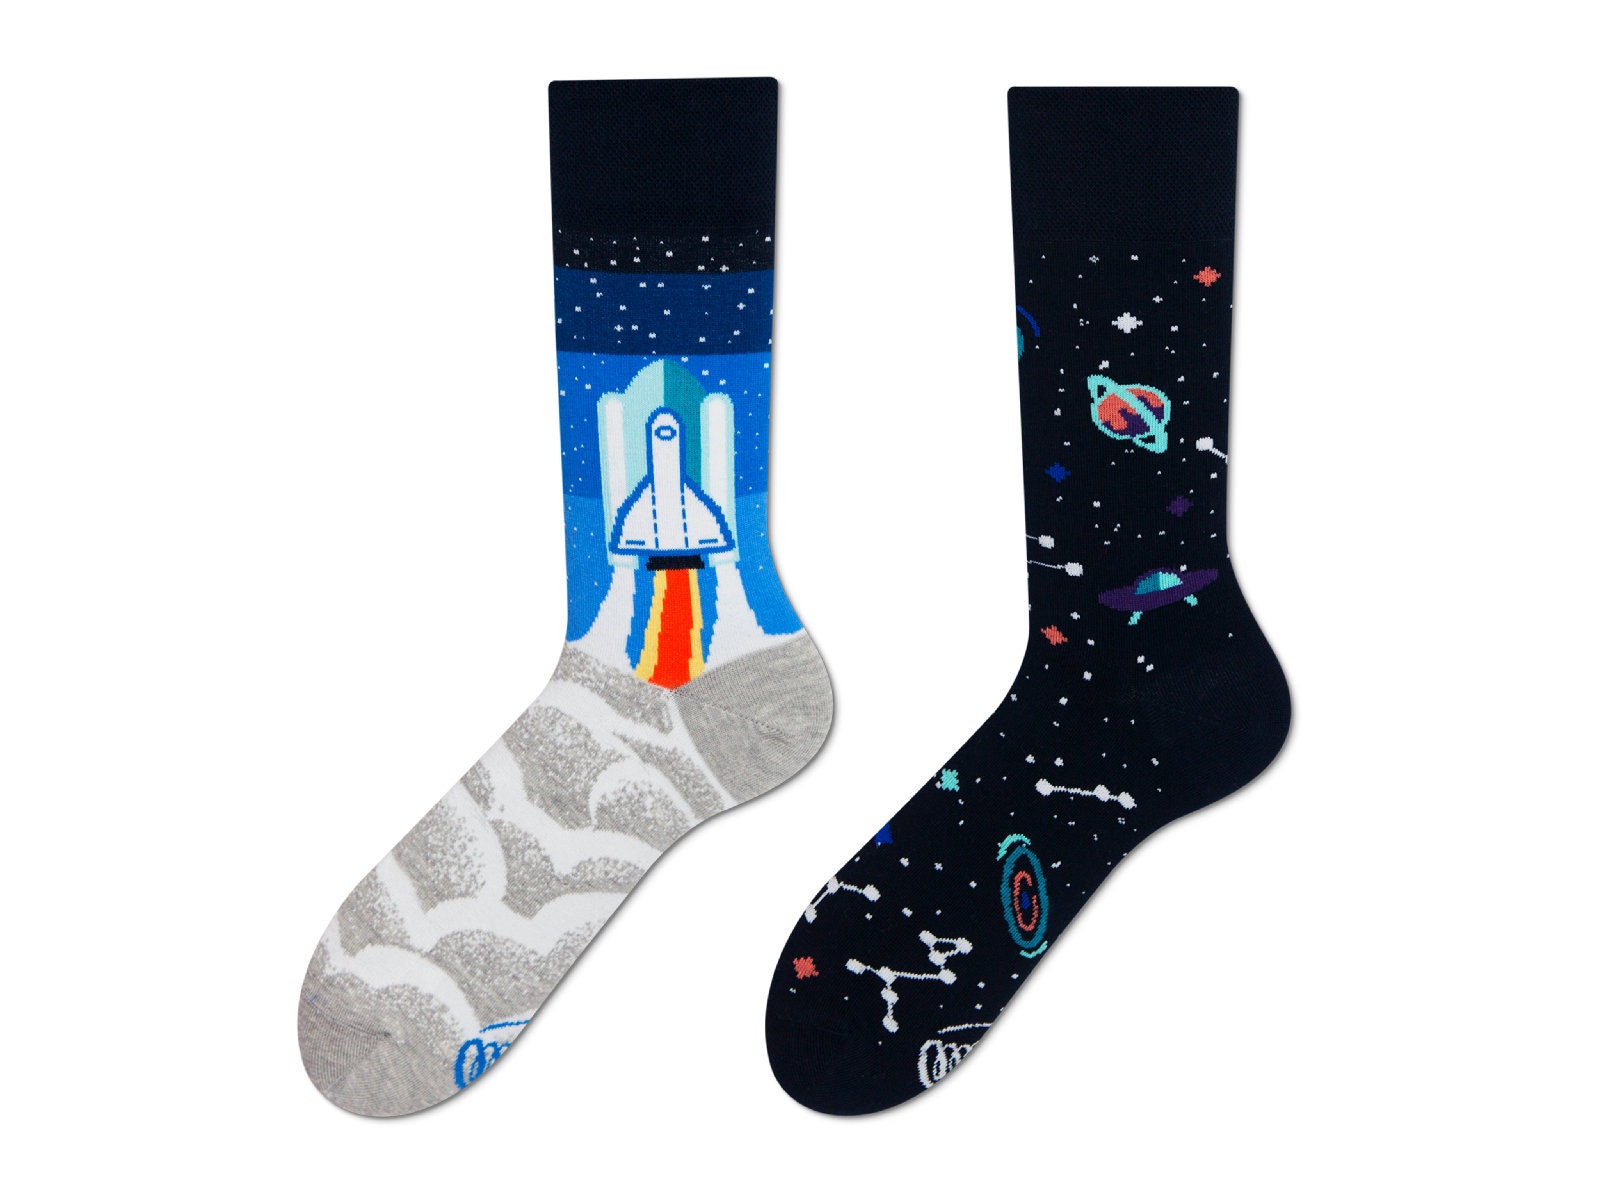 Space Trip socks men socks colorful socks cool socks | Etsy